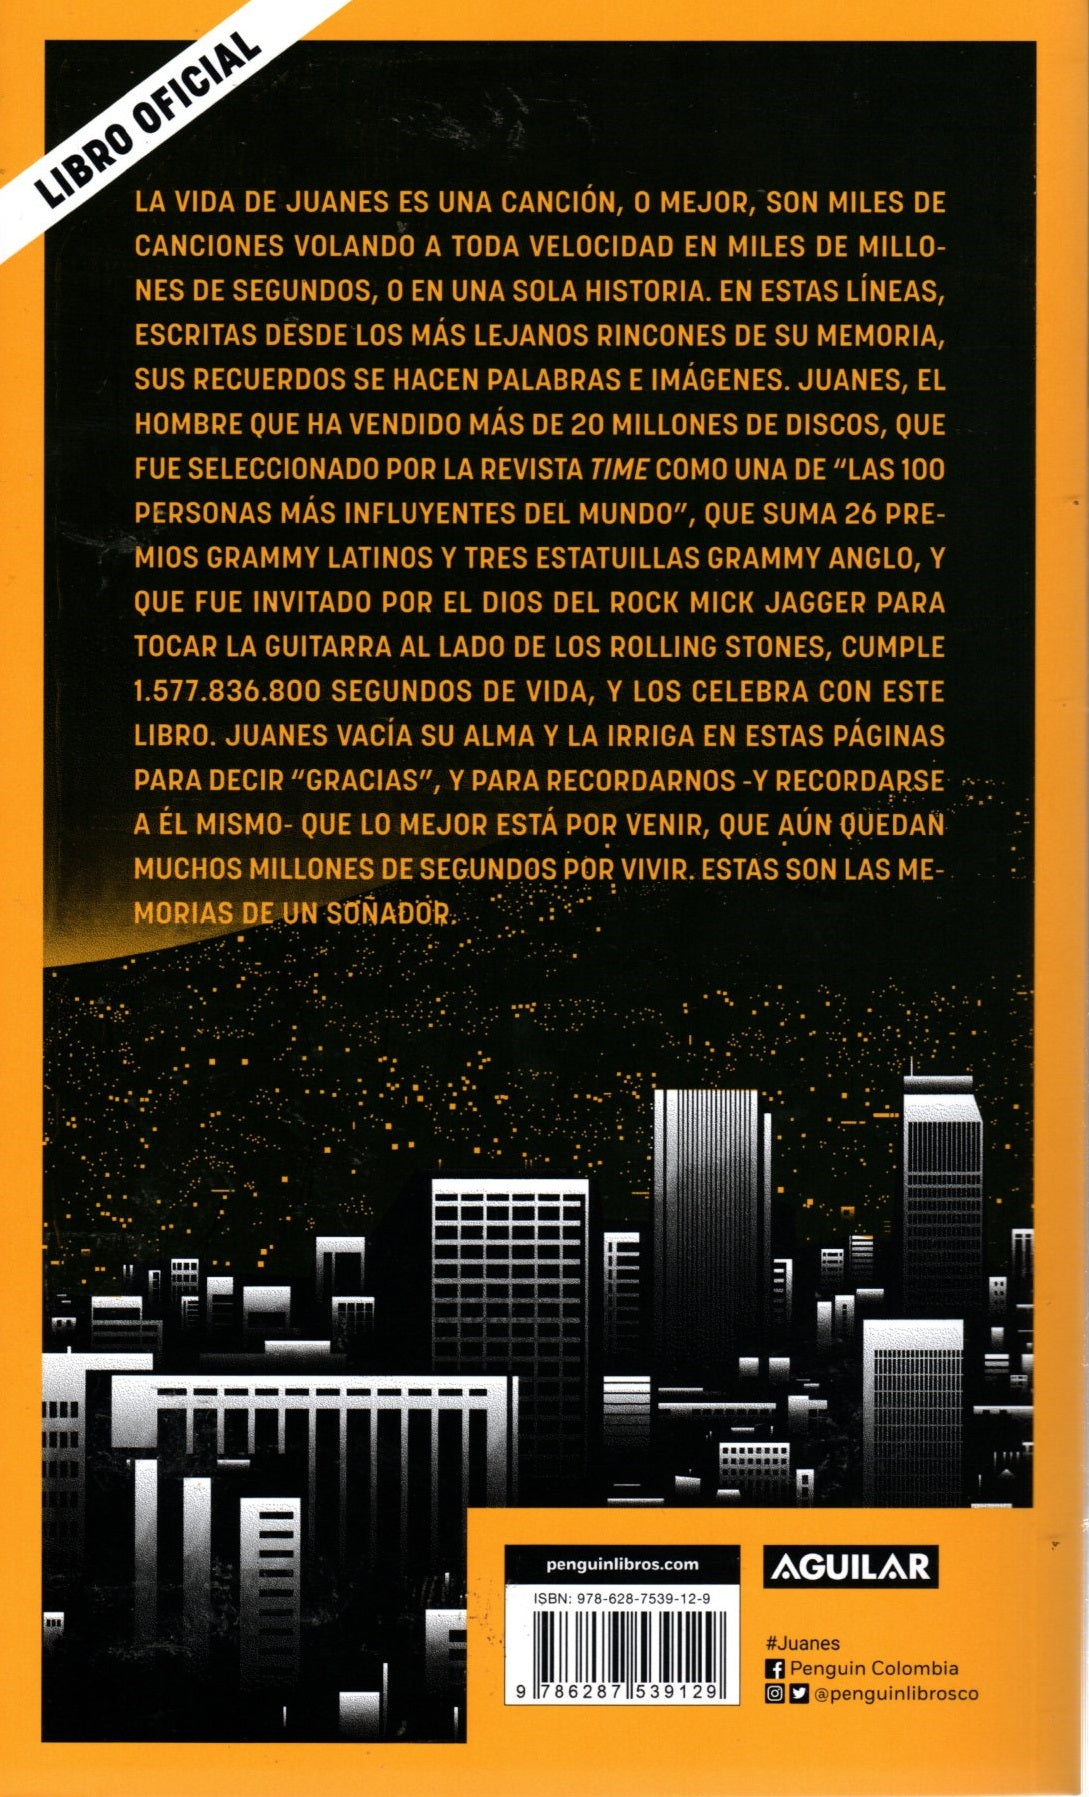 Libro Diego Londoño - Juanes